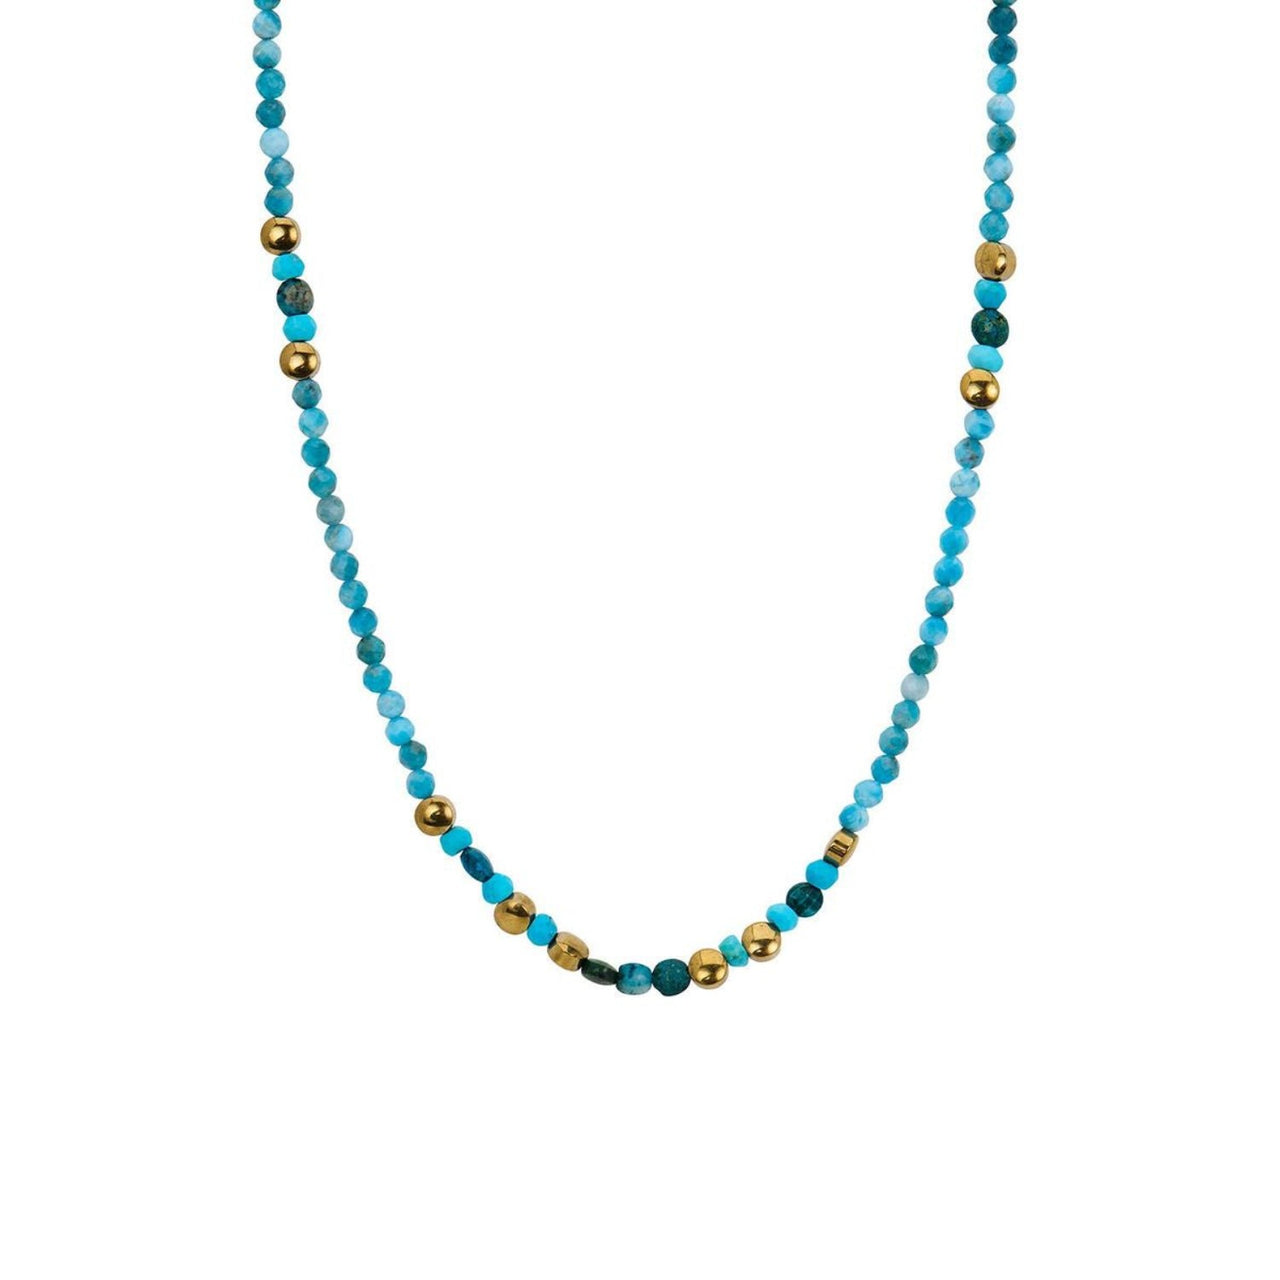 Adriatic Turquoise Necklace